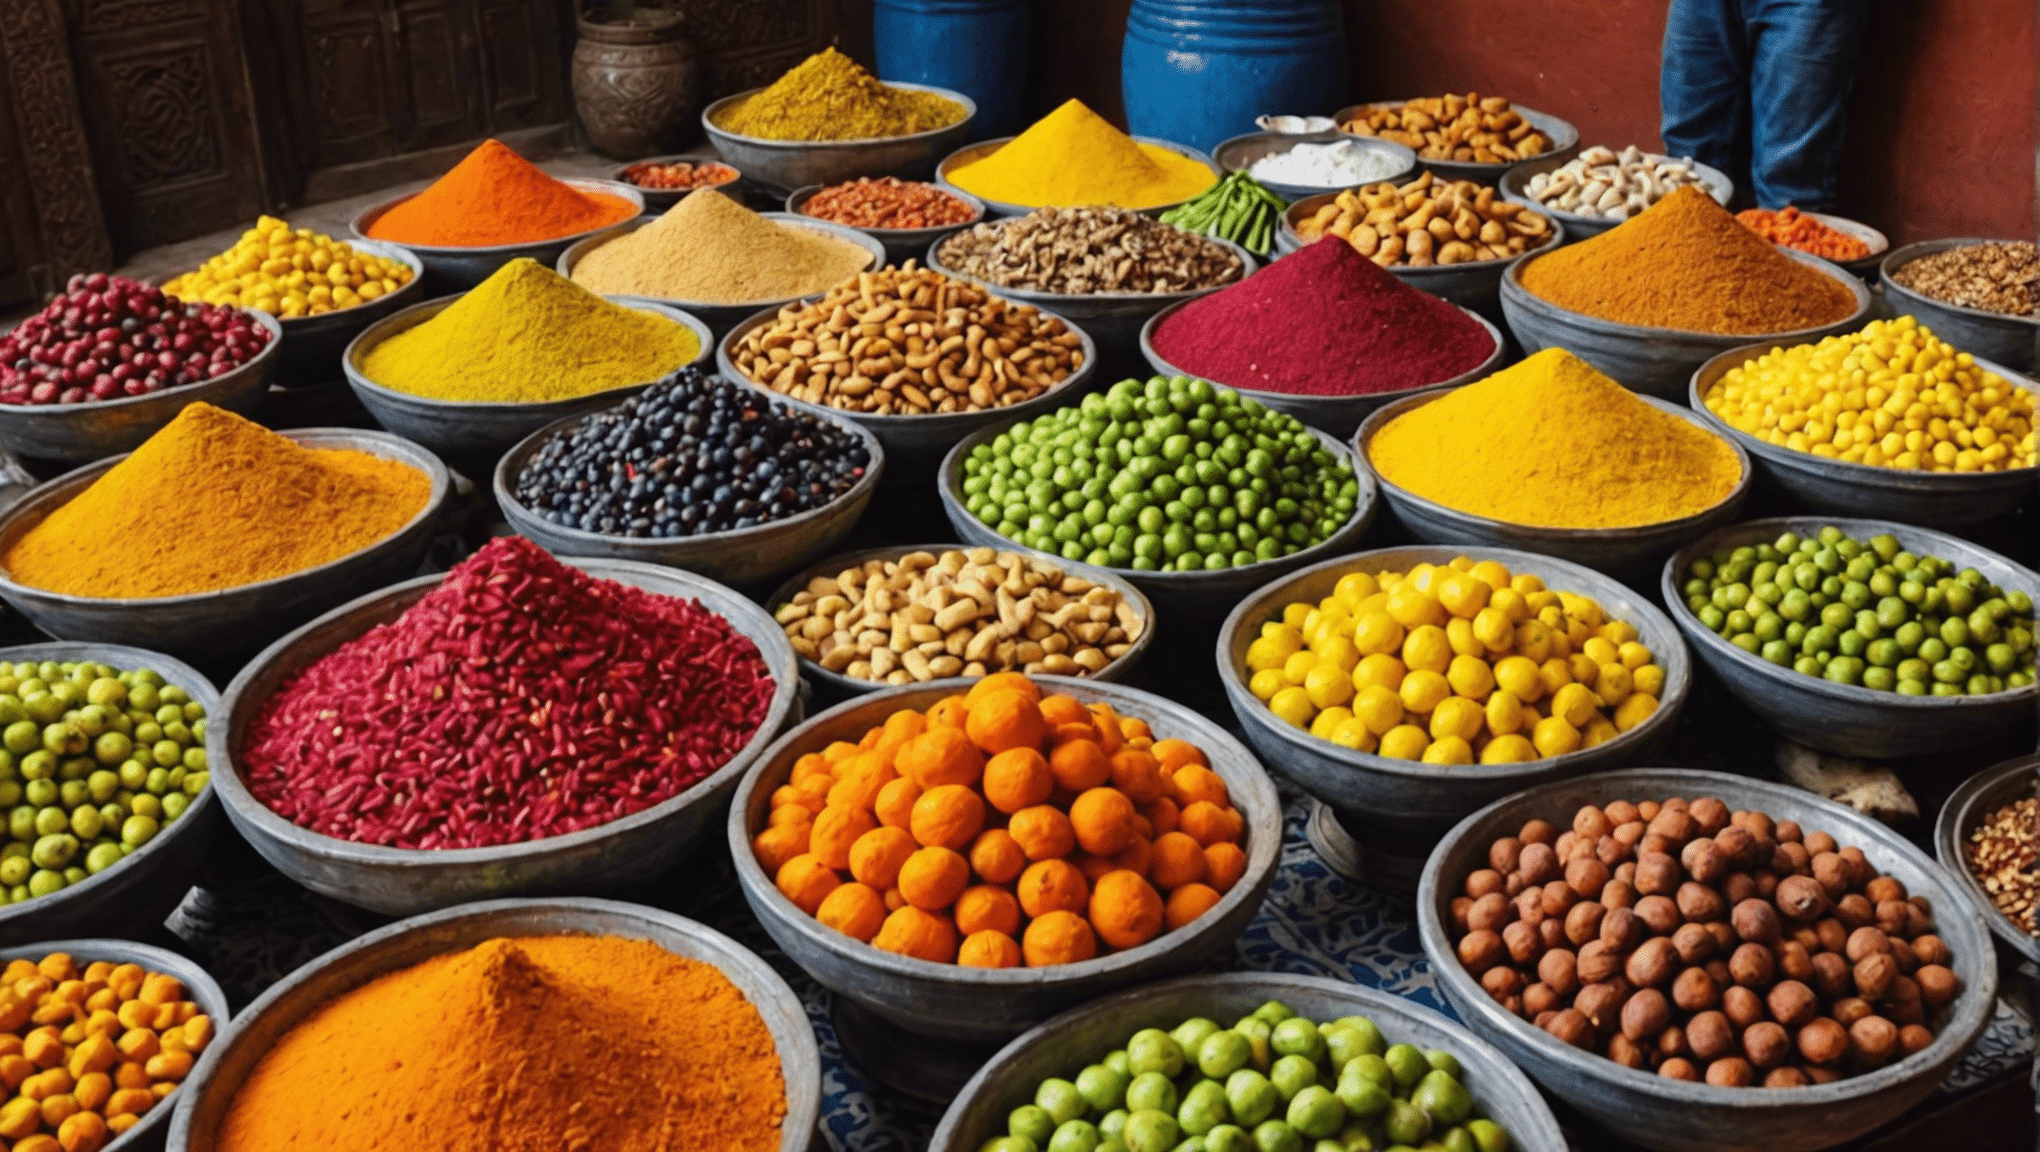 Gönnen Sie sich die exotischsten Köstlichkeiten Marrakeschs und stellen Sie Ihren Mut bei einzigartigen kulinarischen Erlebnissen auf die Probe. Entdecken Sie den furchtlosen Feinschmecker in Ihnen!